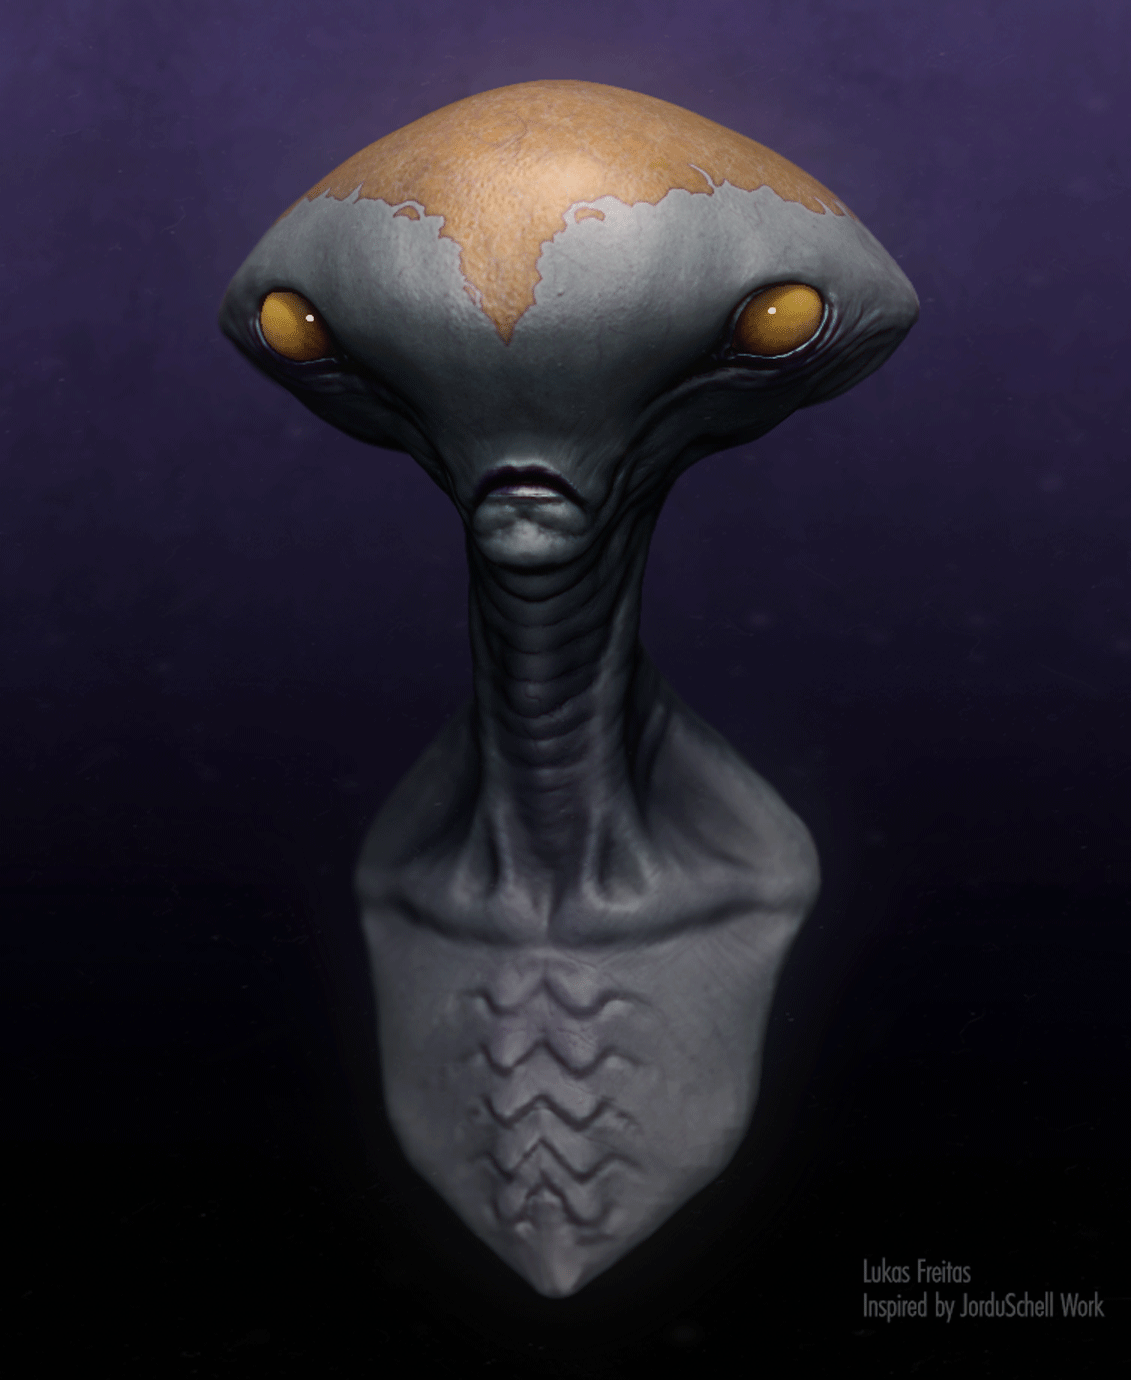 Alien Inspired By jordu Schell Work - ZBrushCentral